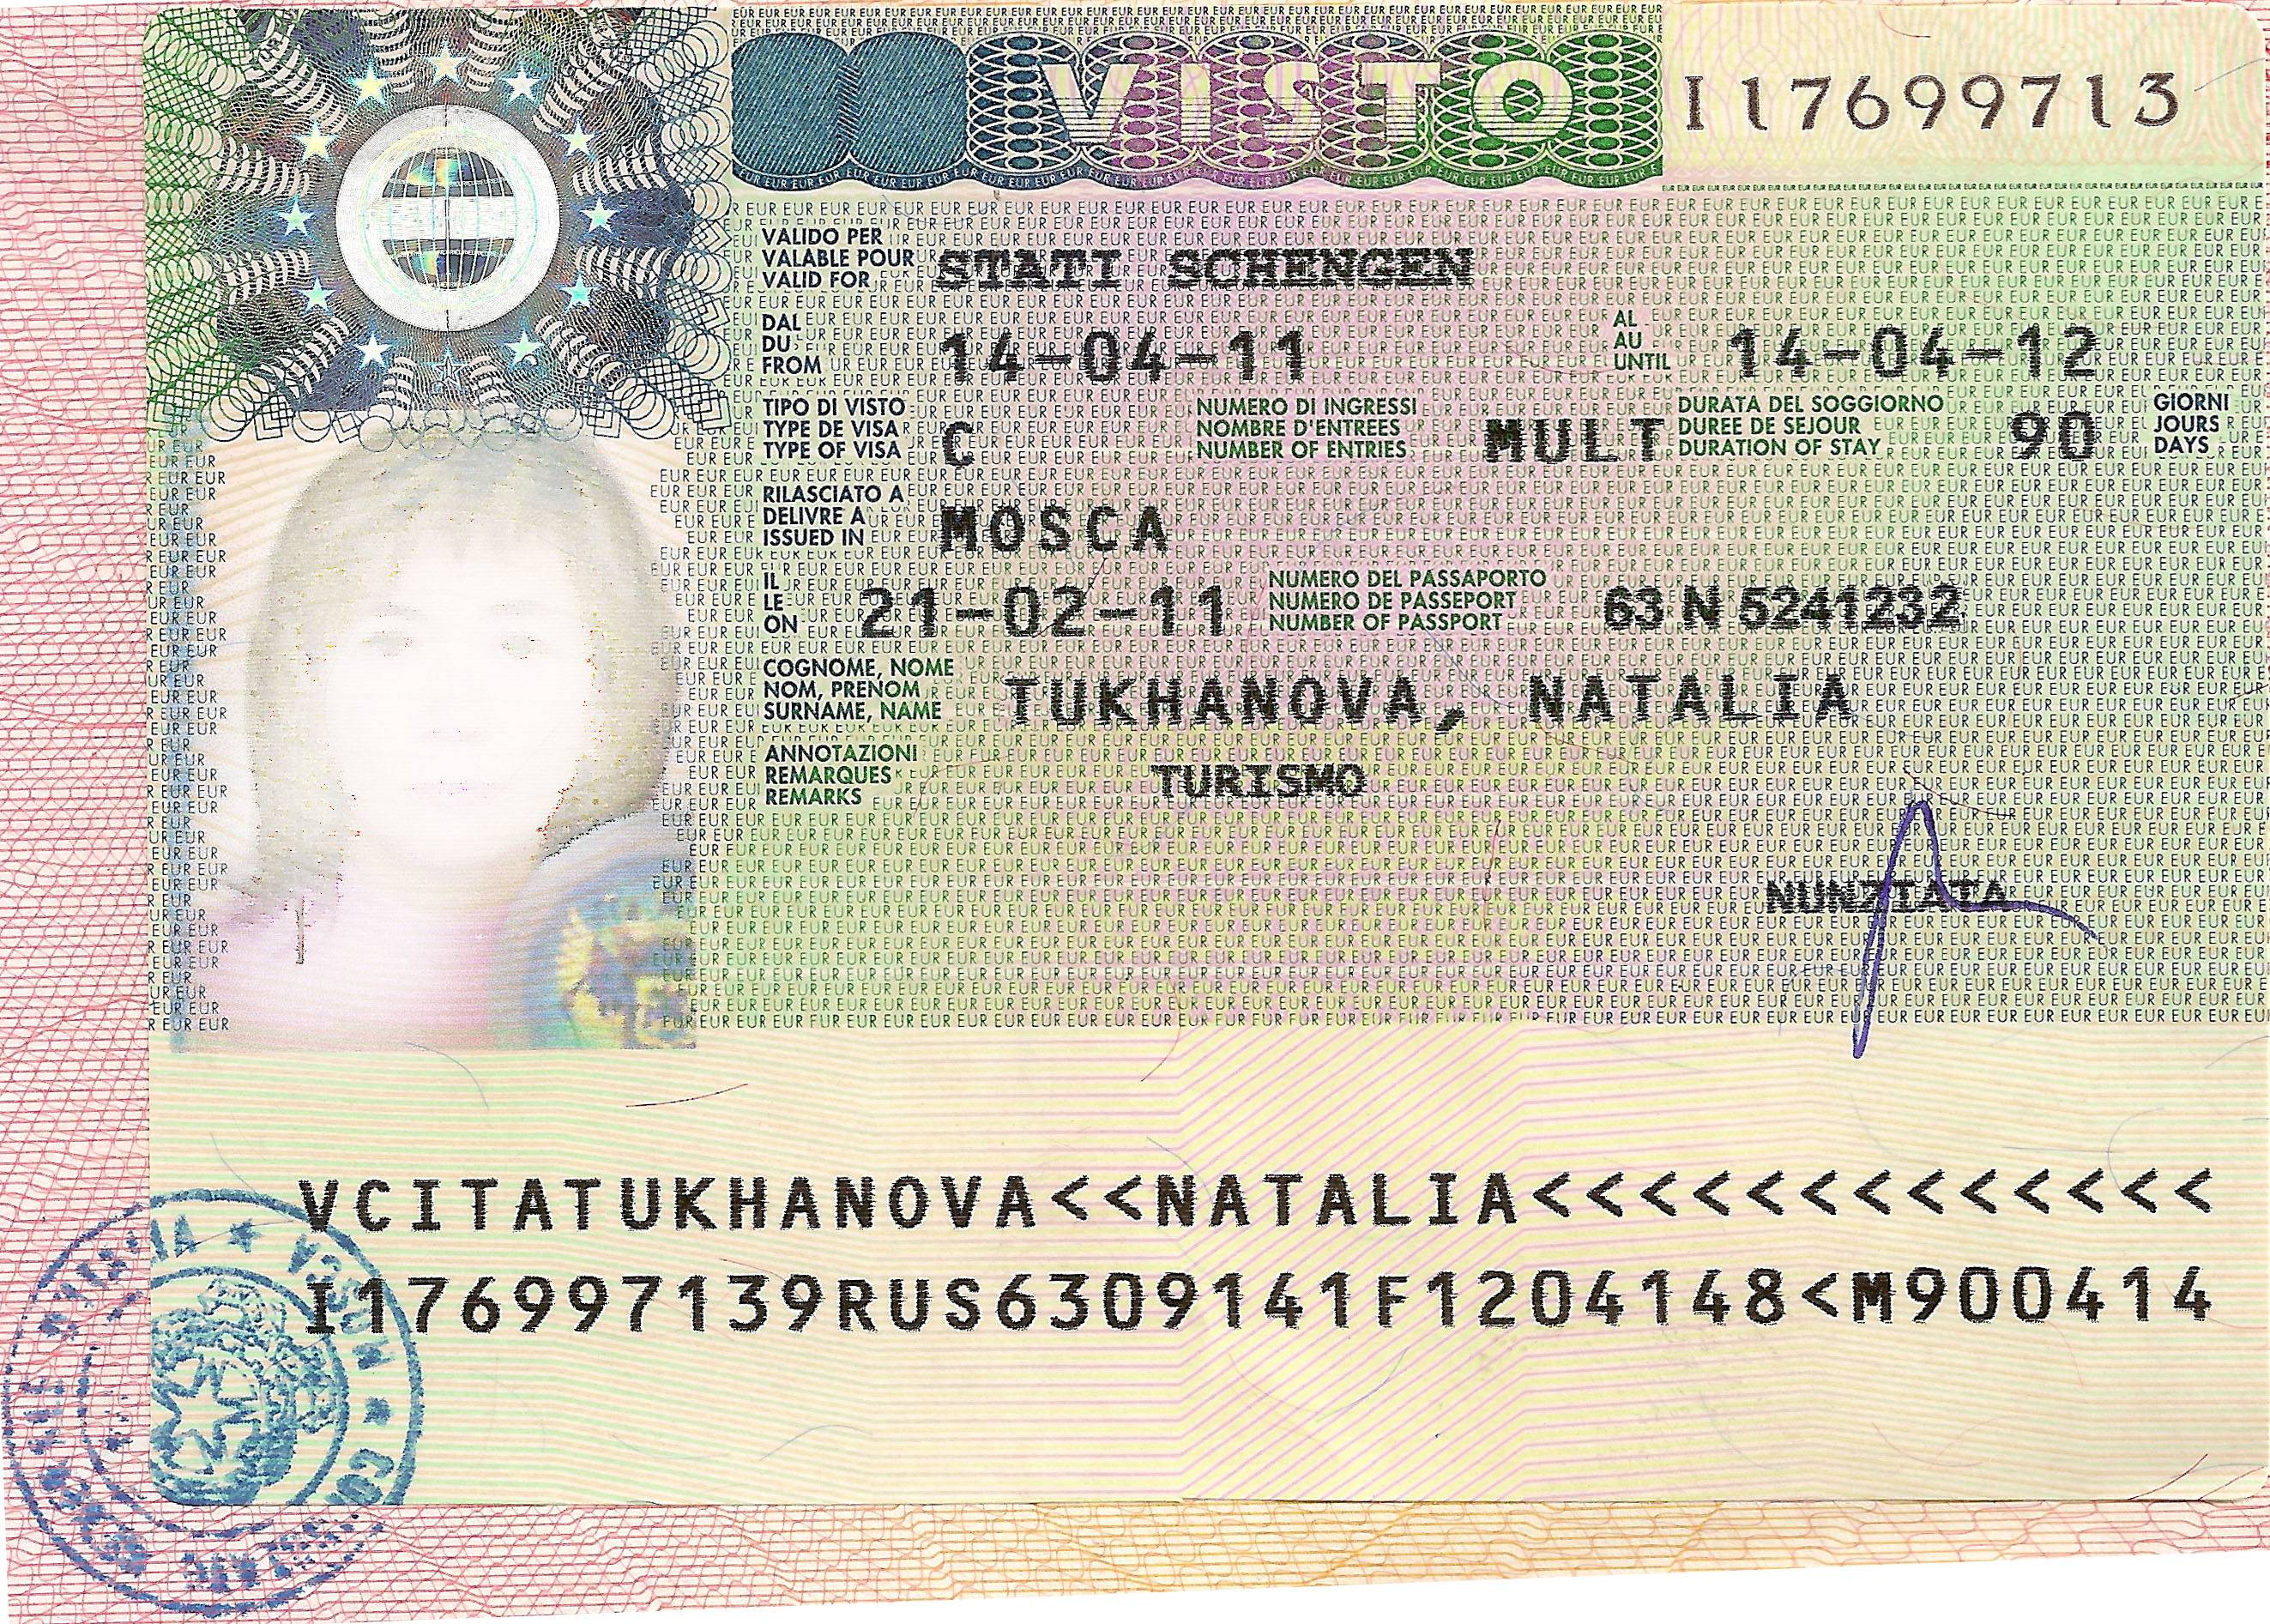 Как оформить и сделать гостевую визу в россию для иностранцев в 2020 году